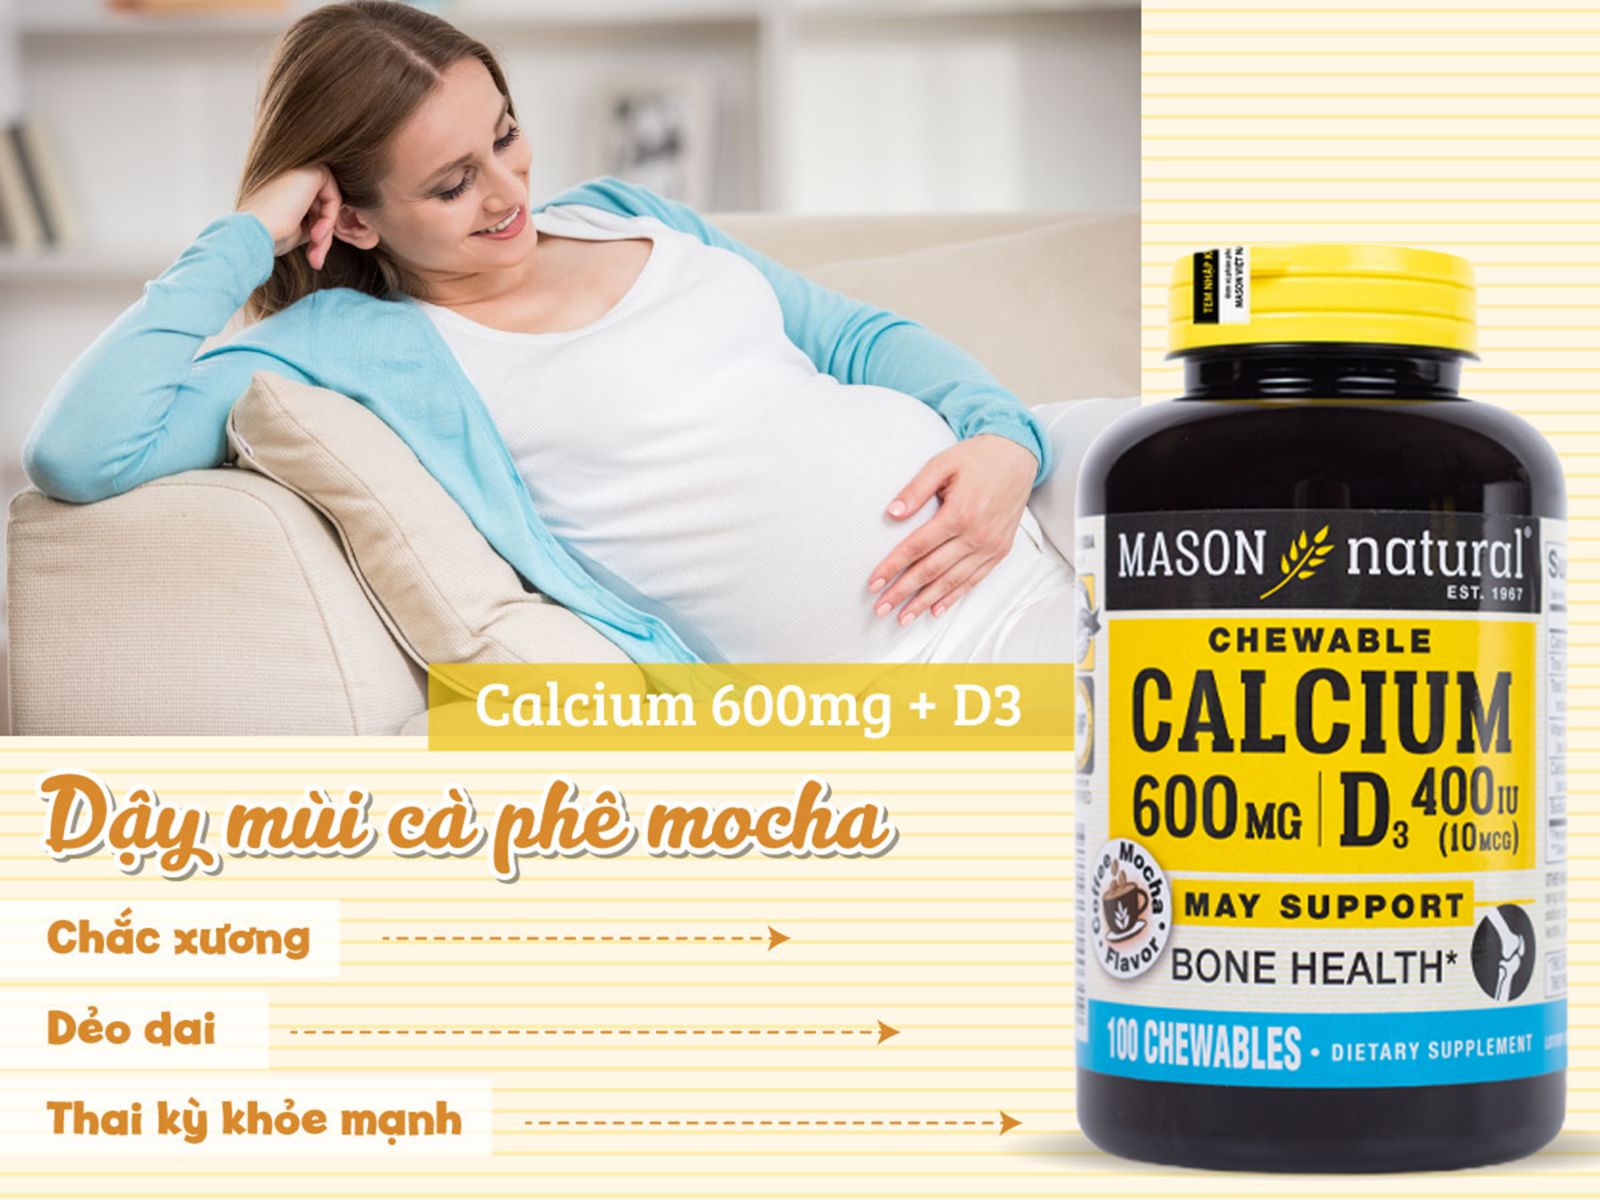 Mason Natural Calcium 600mg + D3 canxi cho bà bầu 3 tháng cuối